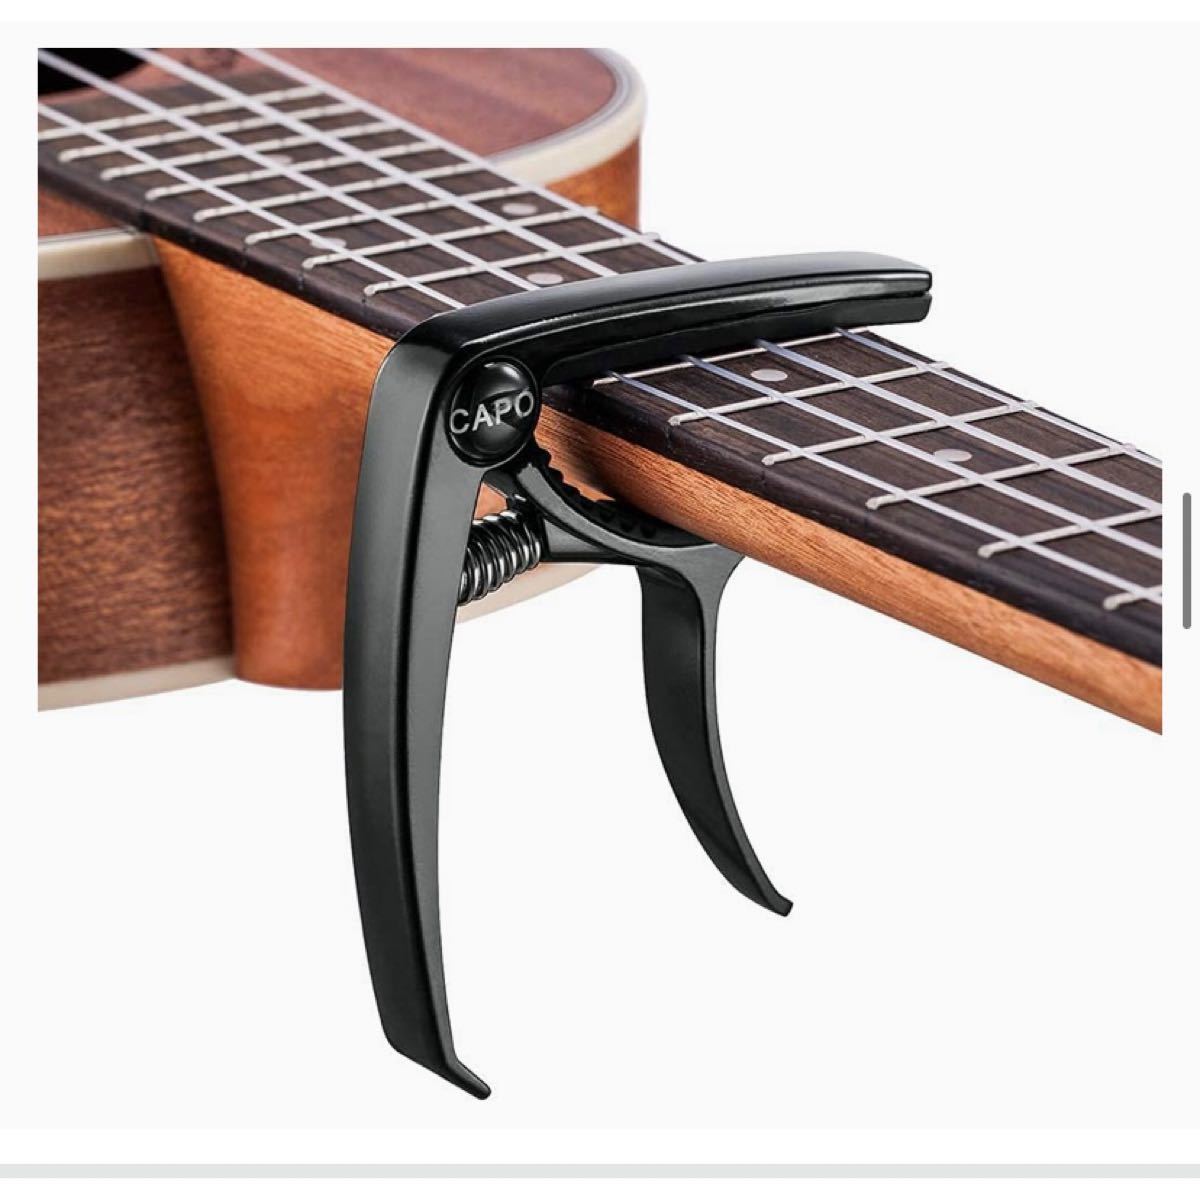 木目 ギターカポタストアコースティックギター エレキギター ベース ウクレレ カポタスト エレキギター アコースティックギター 